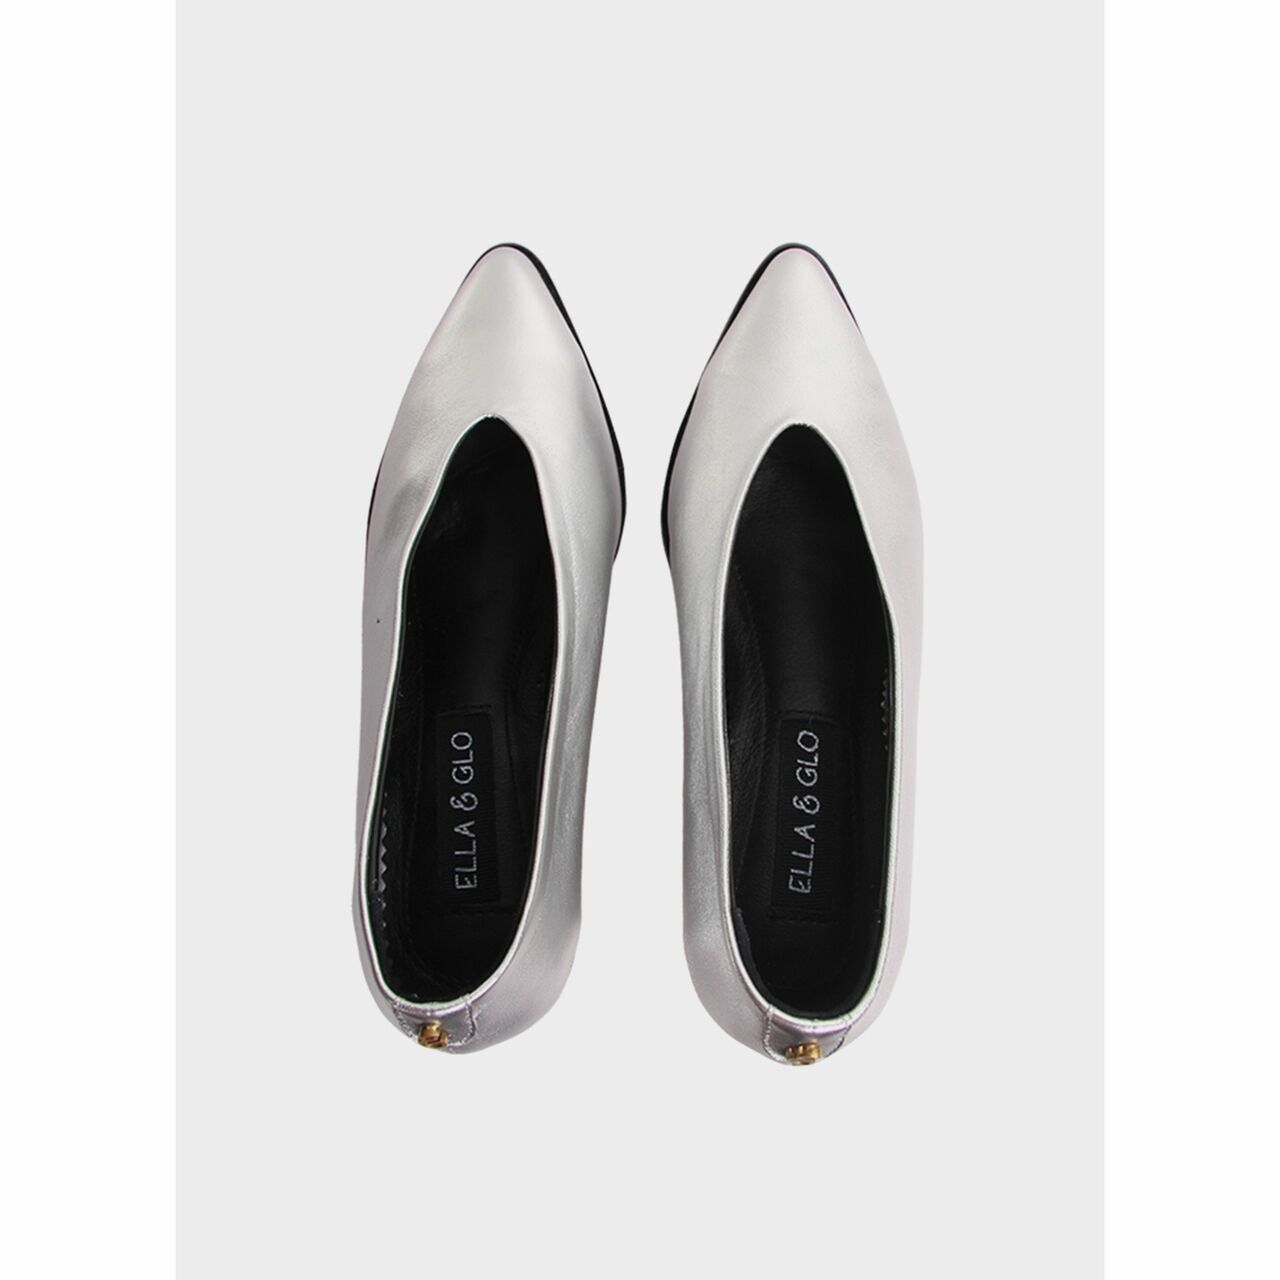 Ella & Glo Silver Heels